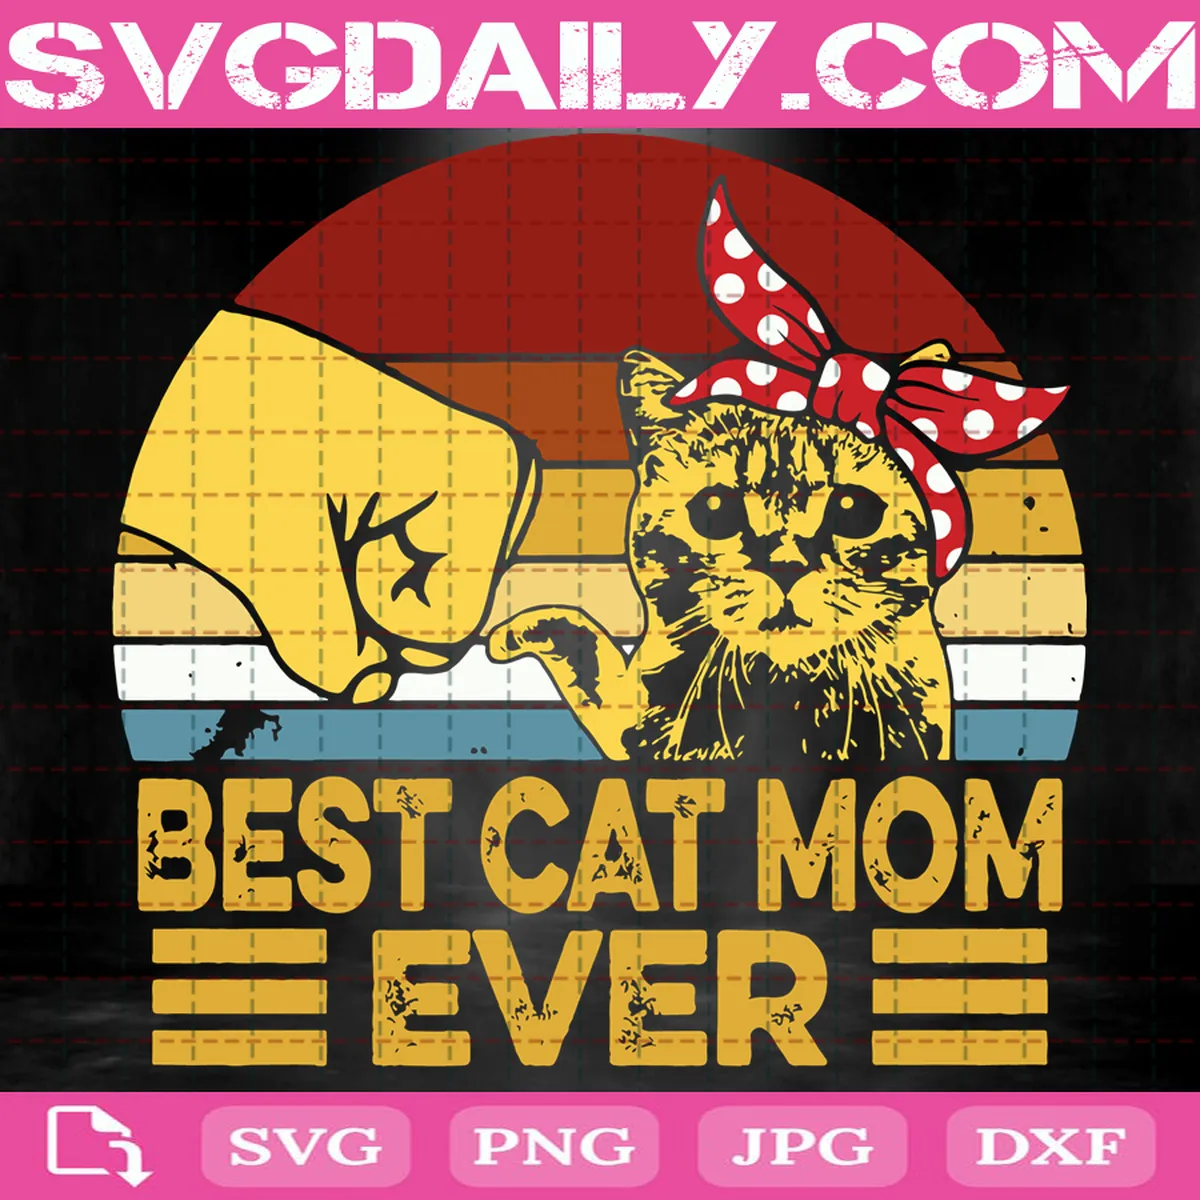 Best Cat Mom Ever Svg, Cat Mom Svg, Funny Cat Svg, Mother’s Day Svg, Cat Svg, Svg Png Dxf Eps AI Instant Download